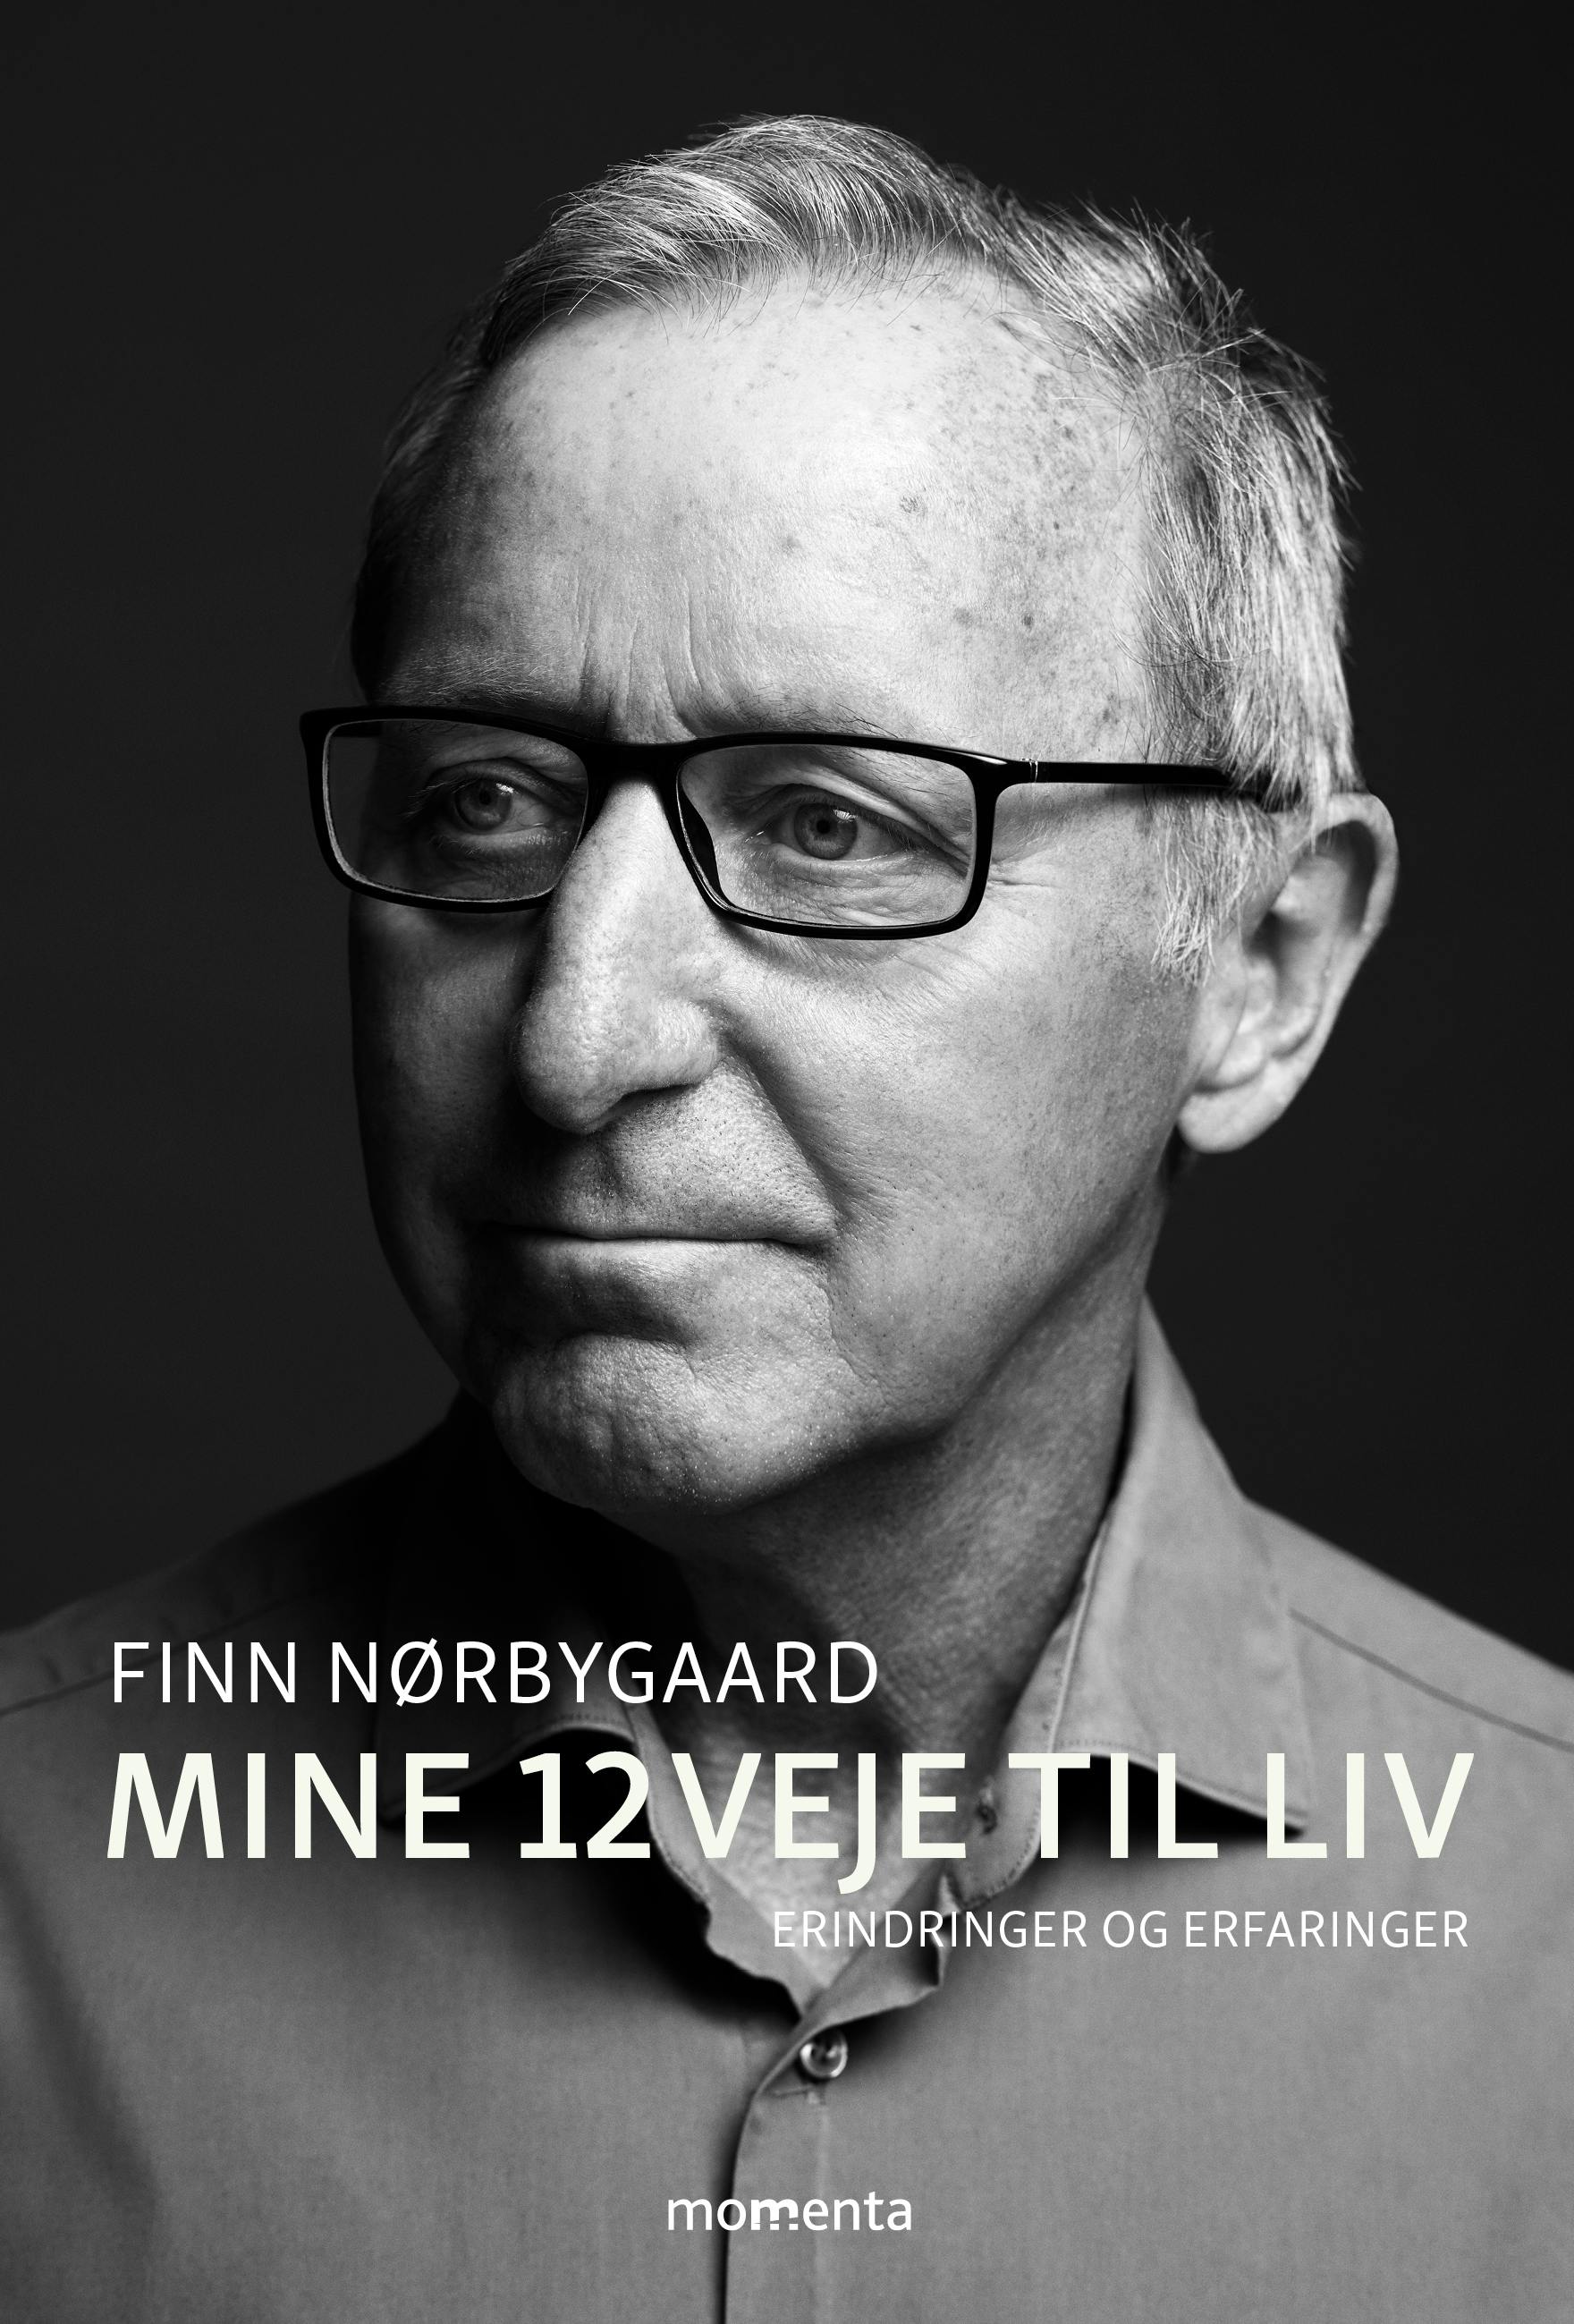 https://imgix.seoghoer.dk/cover_finnnoerbygaard_ny.jpg